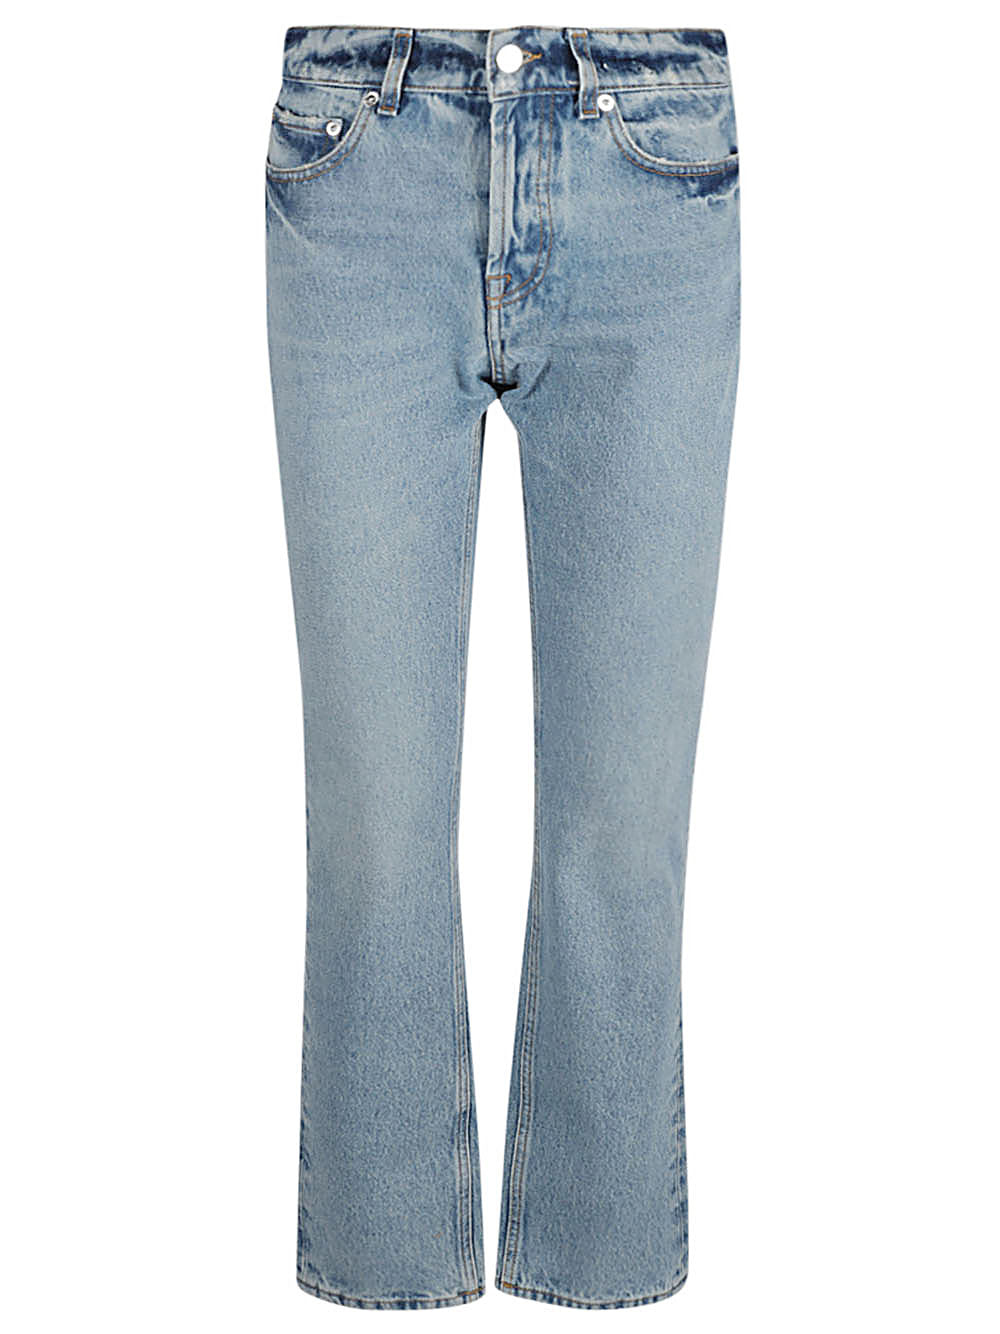 Armarium Jeans Blue-women>clothing>jeans>classic-Armarium-Urbanheer